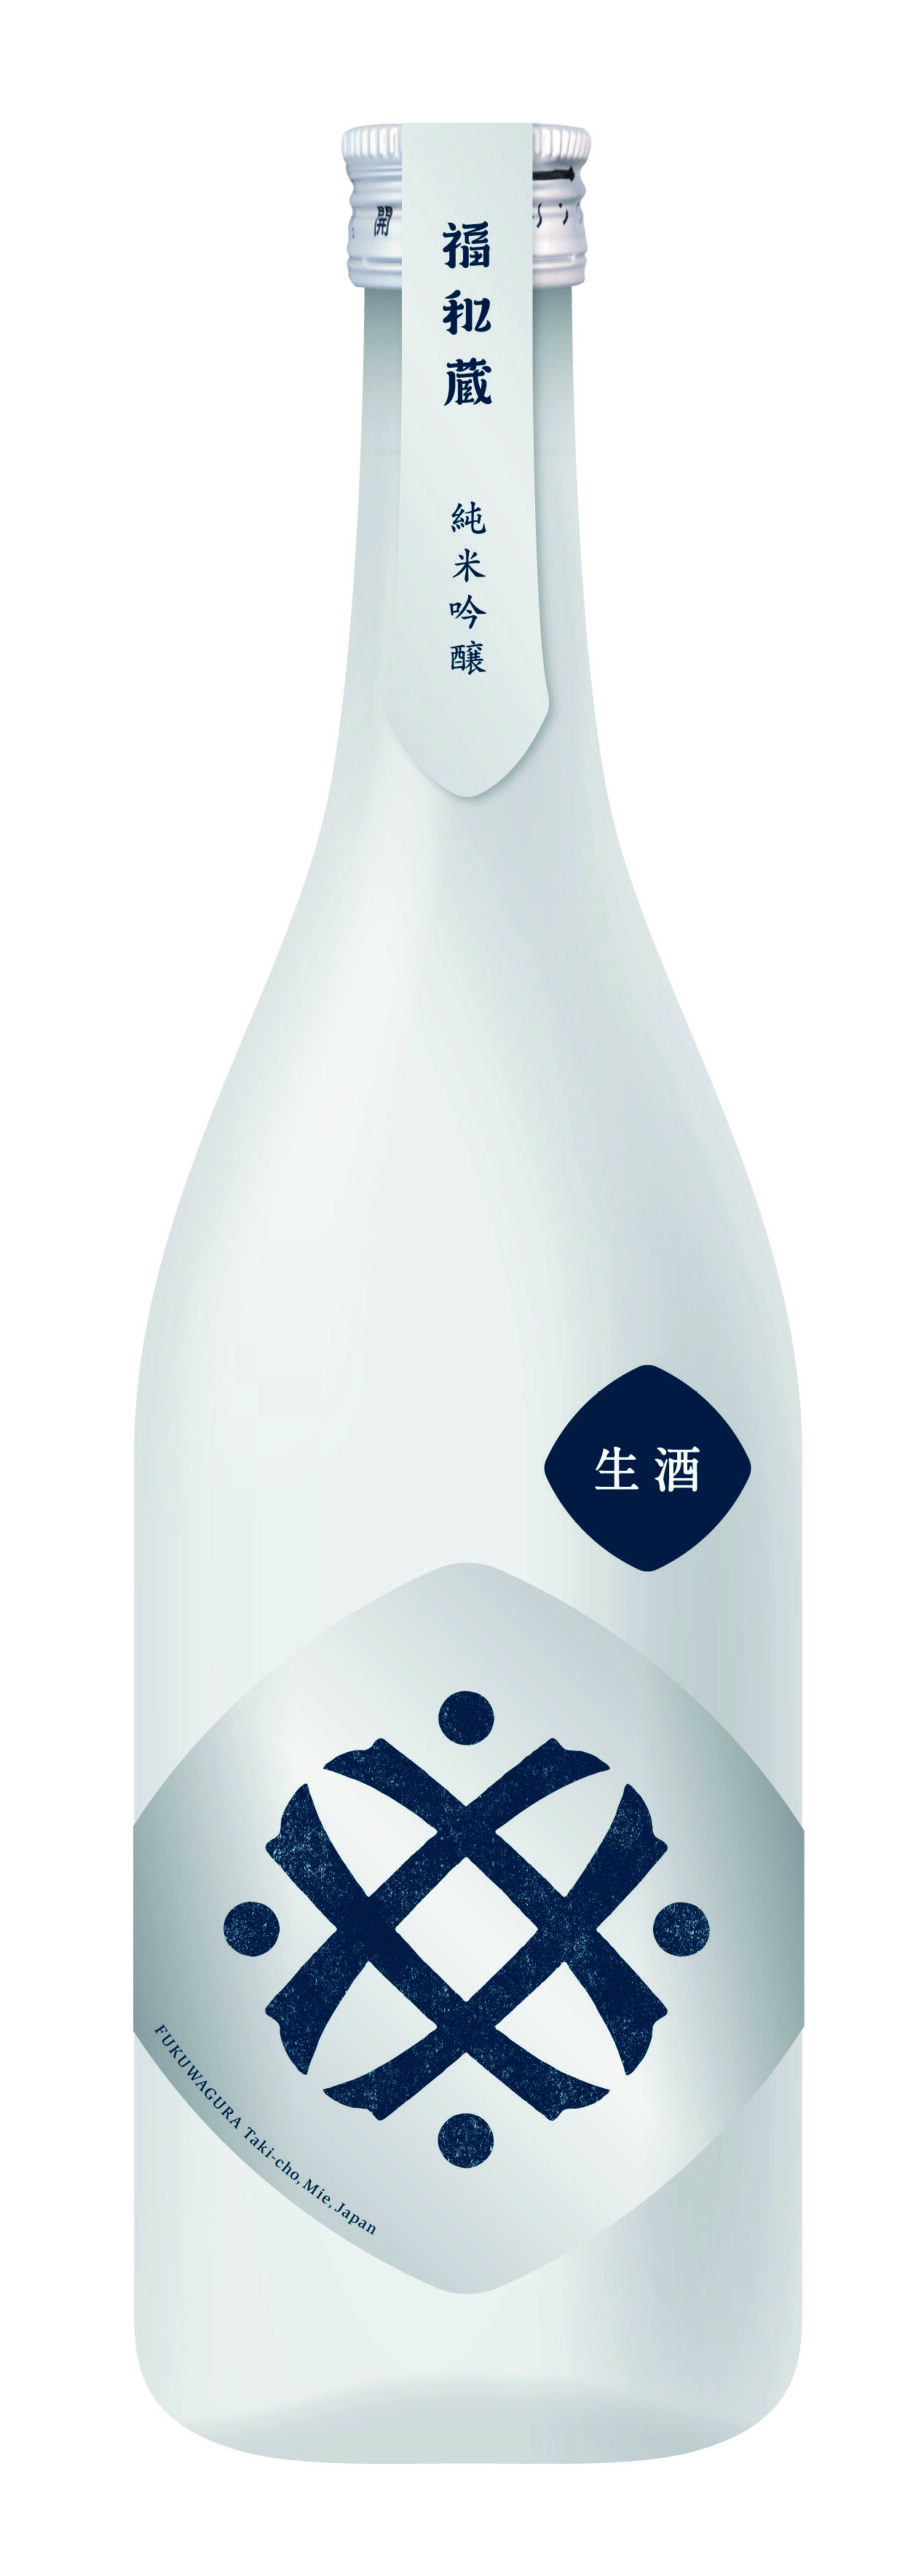 地産地消を追求した井村屋グループ初の酒事業がいよいよスタート！『福和蔵(ふくわぐら) 純米酒／純米吟醸酒』を発売予定！